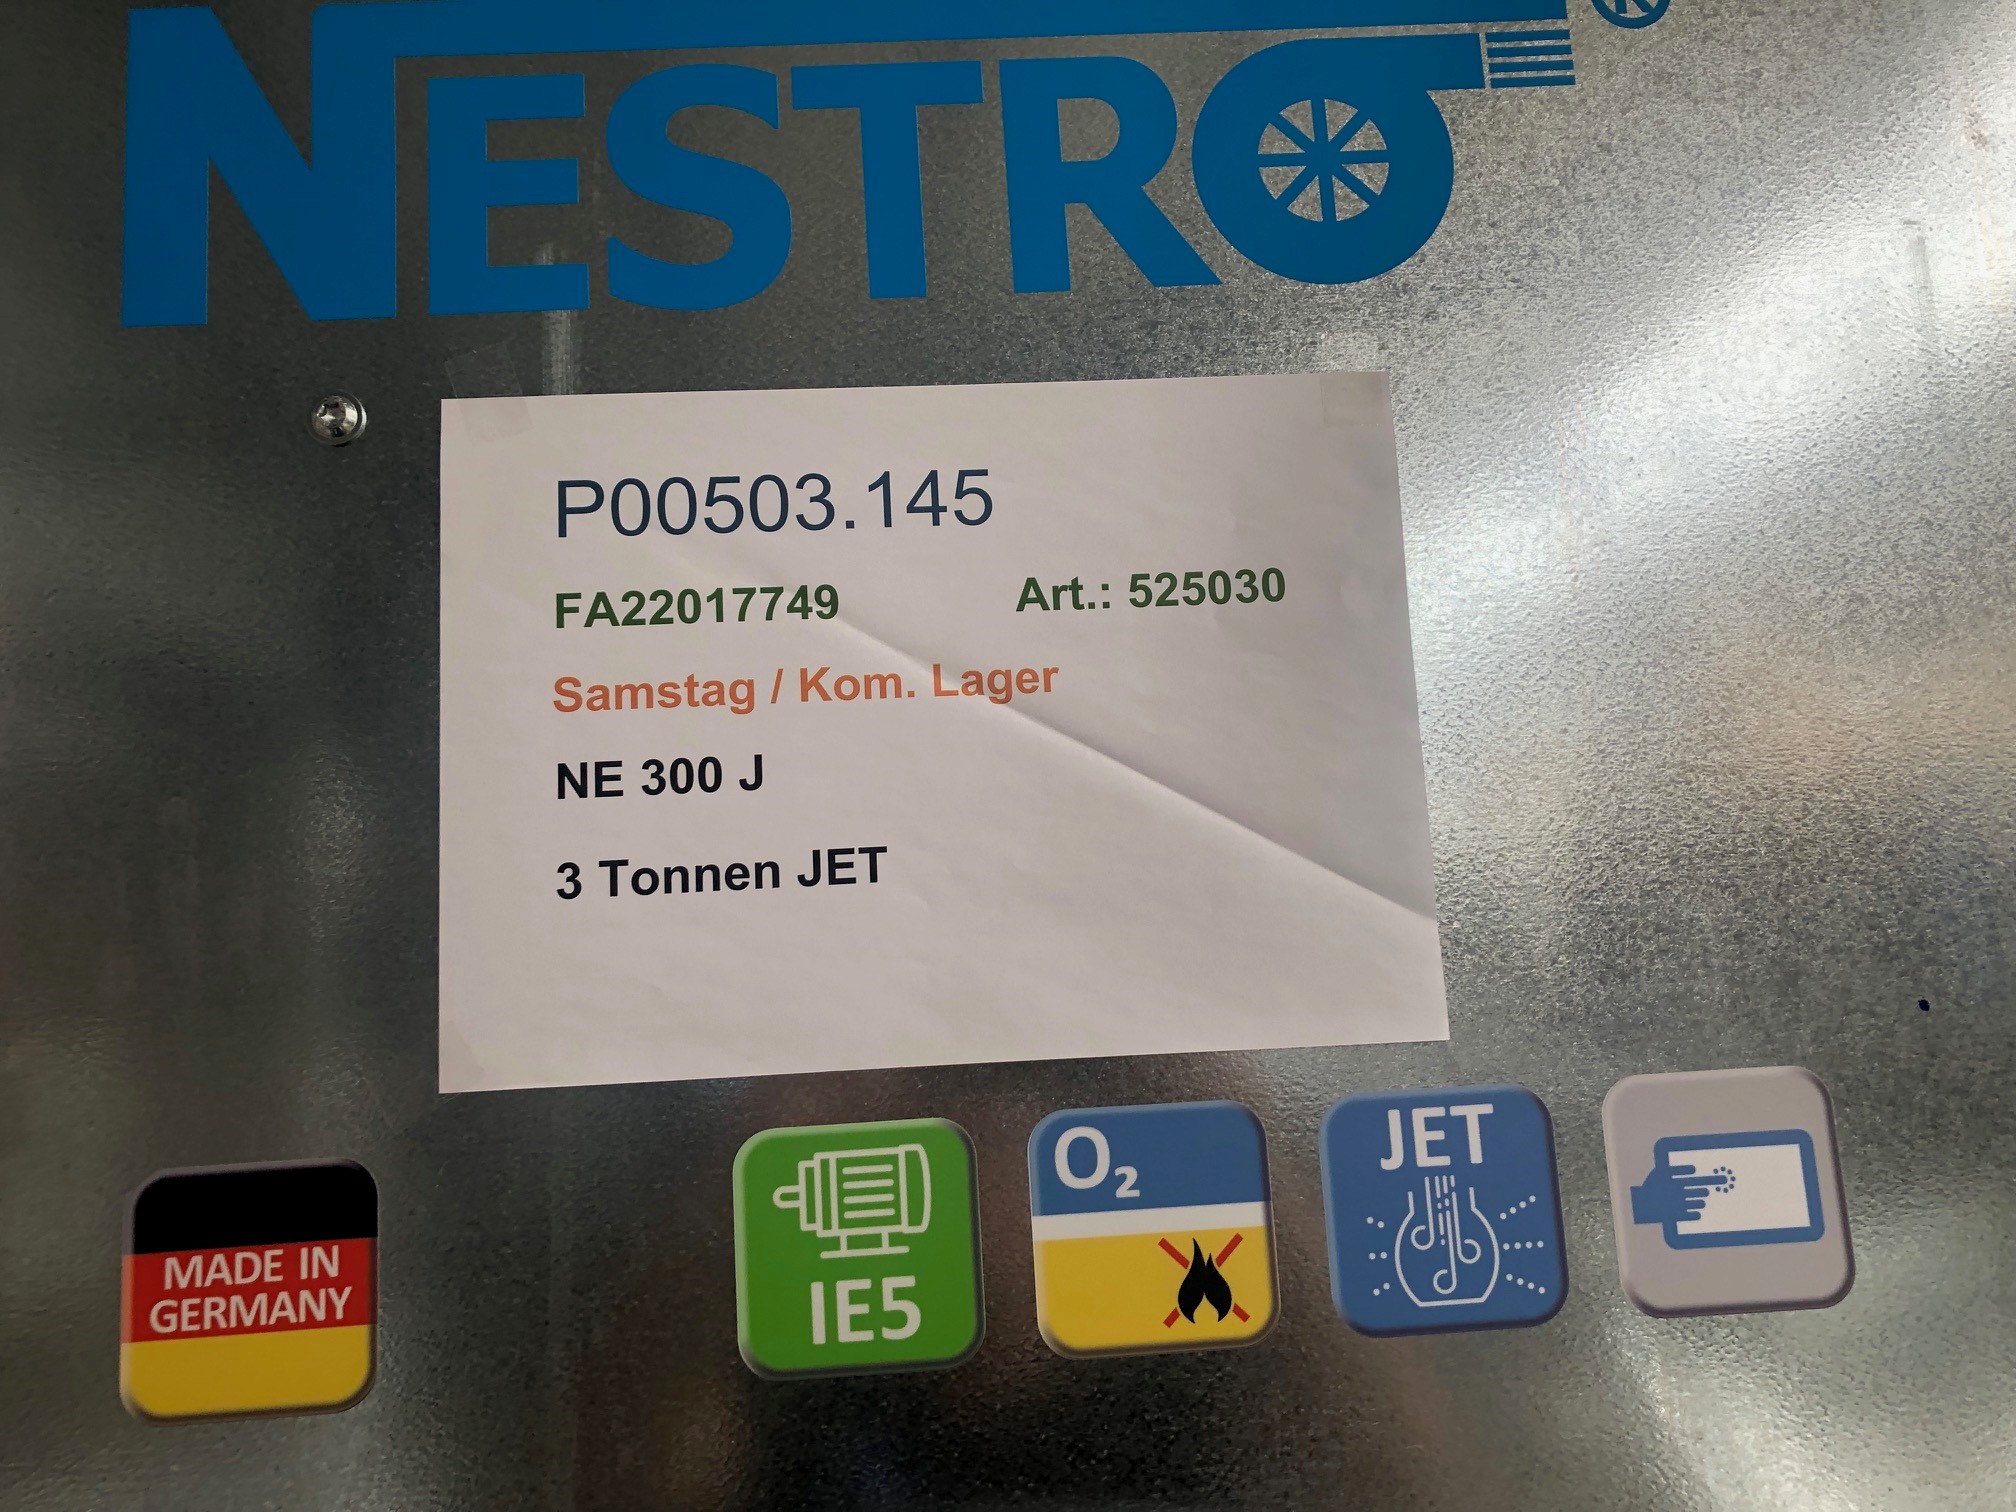 Nestro NE 300 J